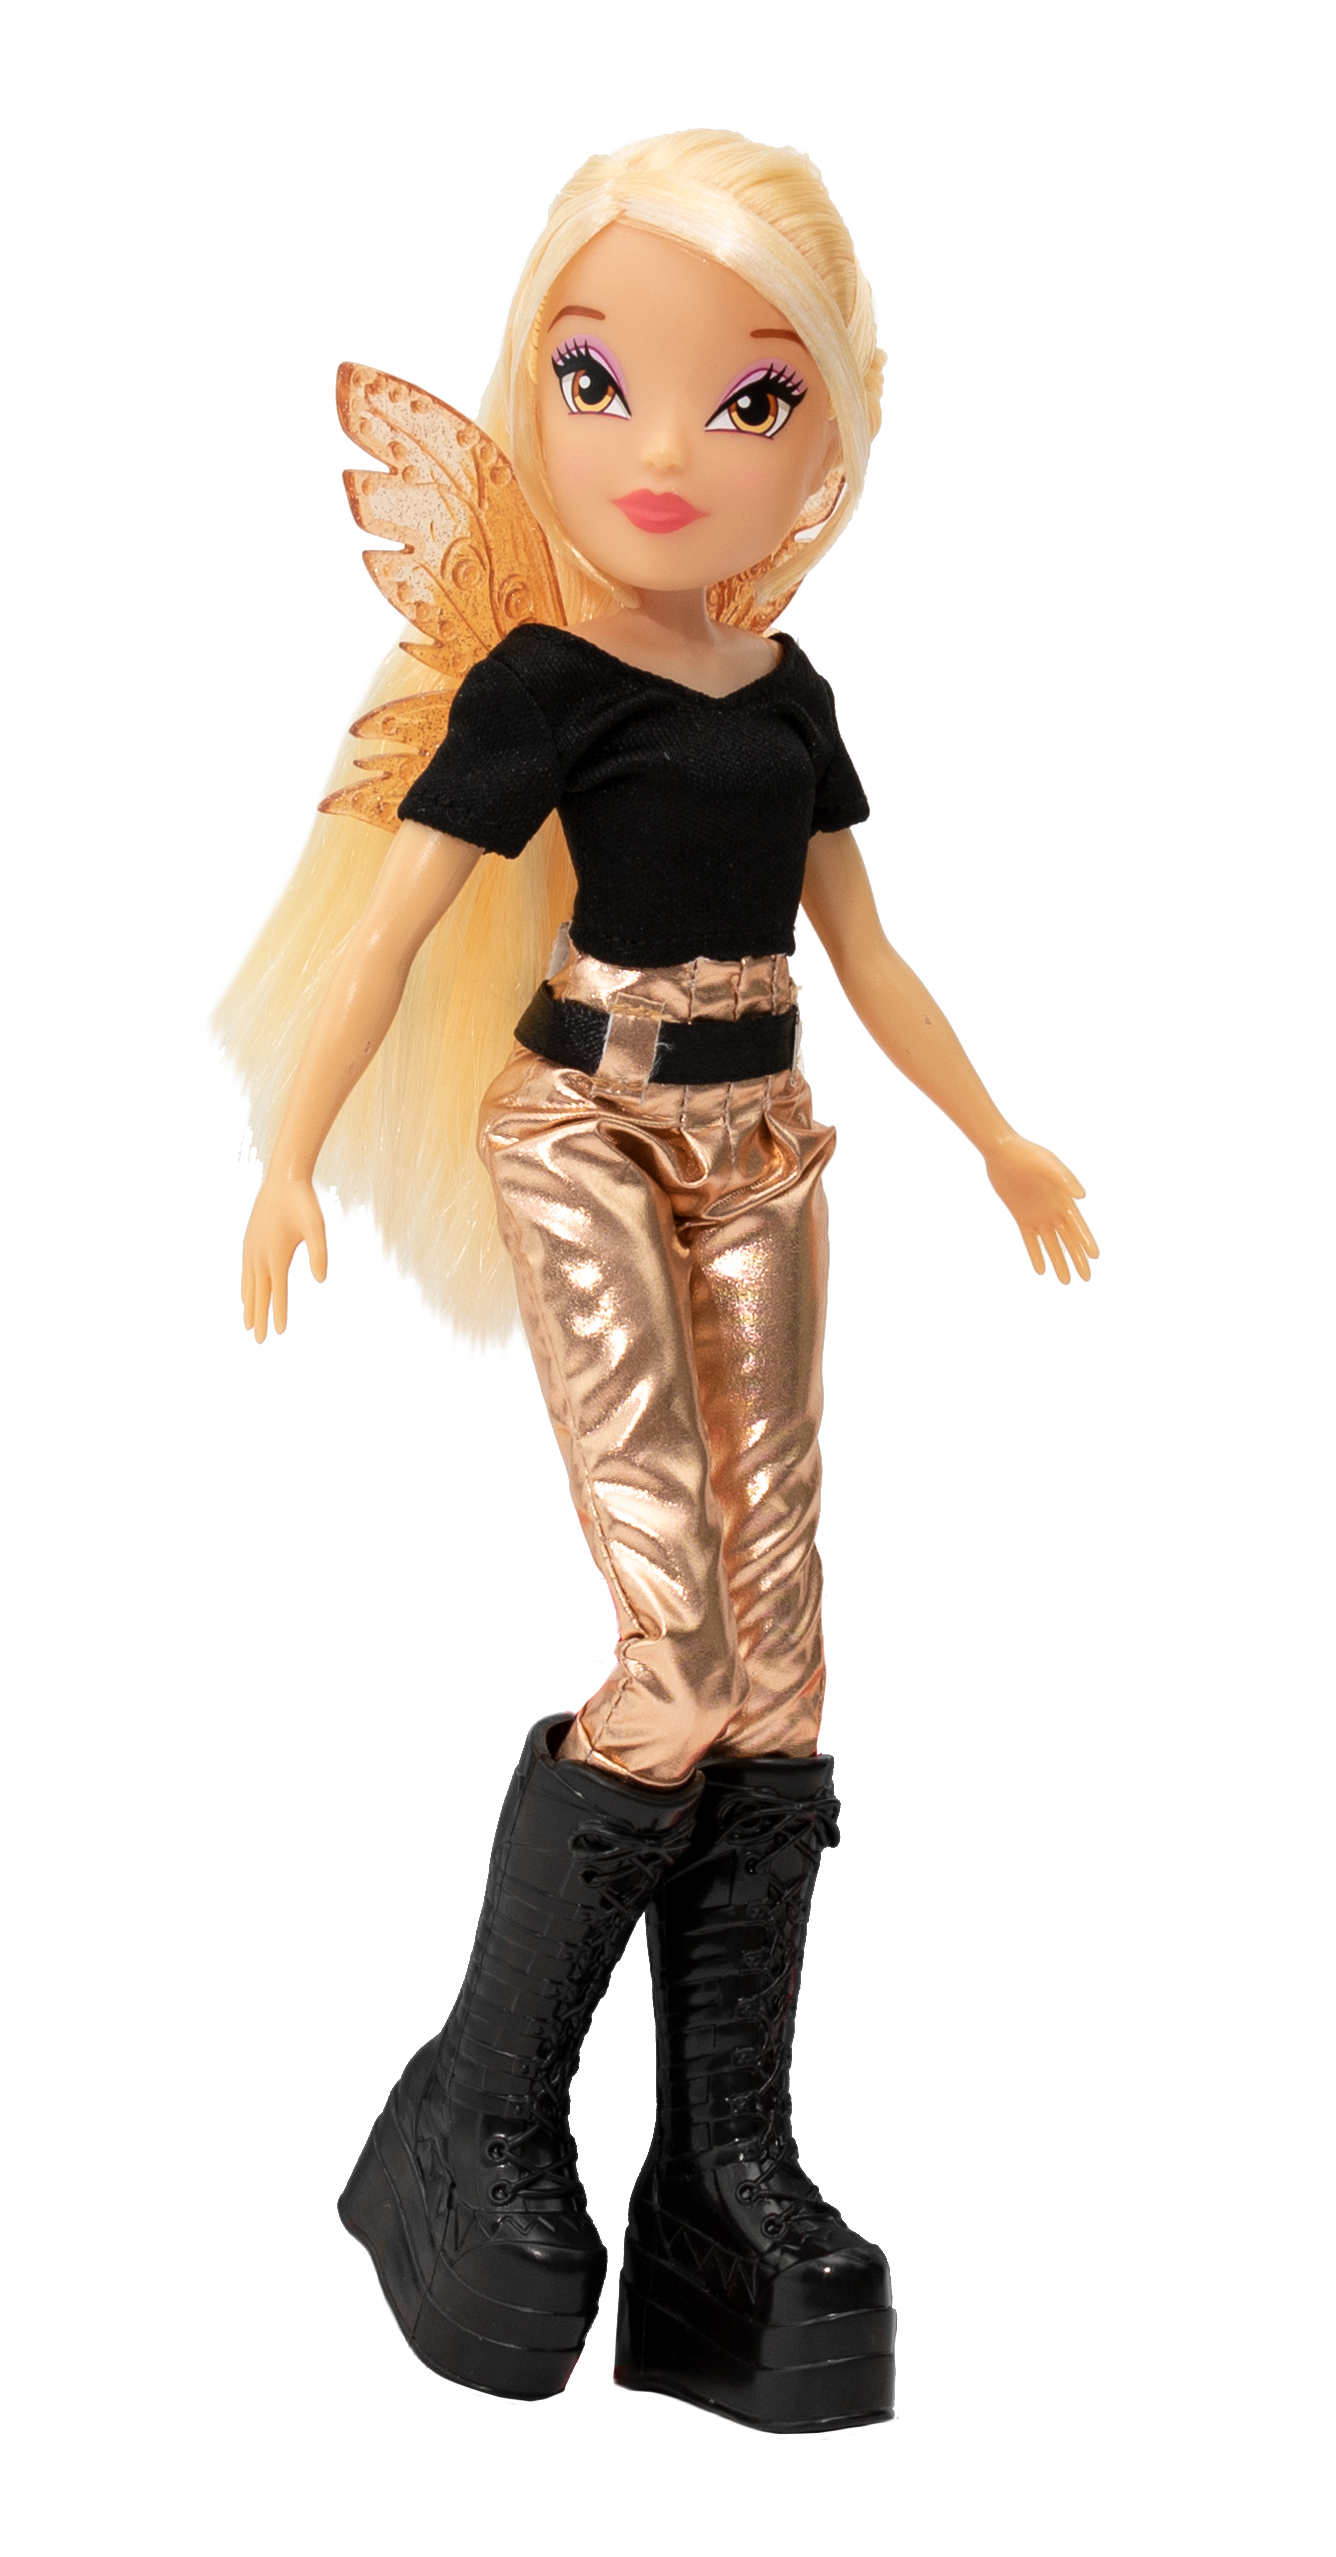 Winx doll - bambola fashion doll personaggio stella alta cm 23 - WINX